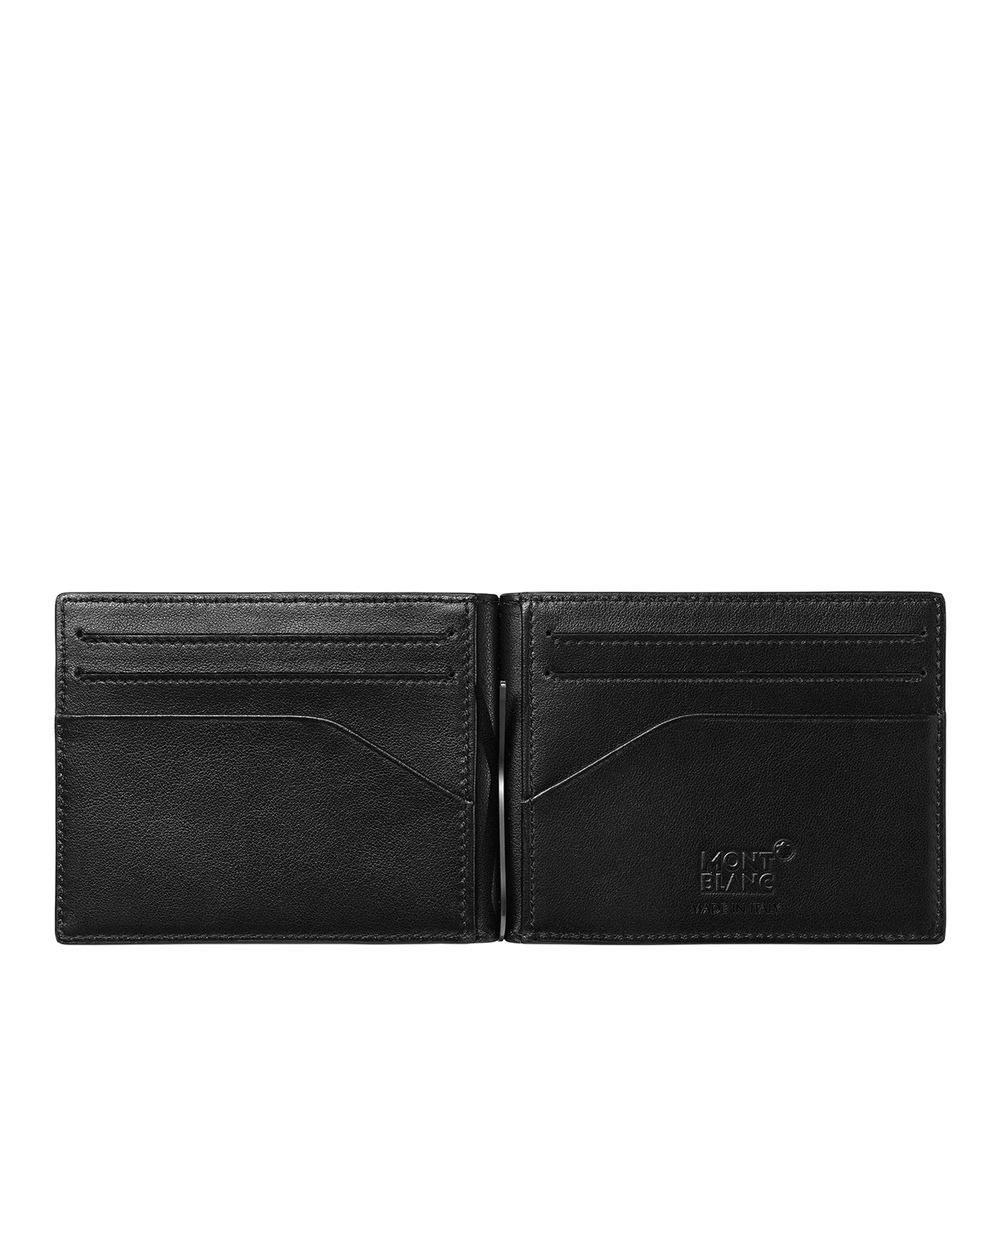 Кожаный бумажник Montblanc Extreme 2.0 6cc Montblanc 128614, черный цвет • Купить в интернет-магазине Kameron